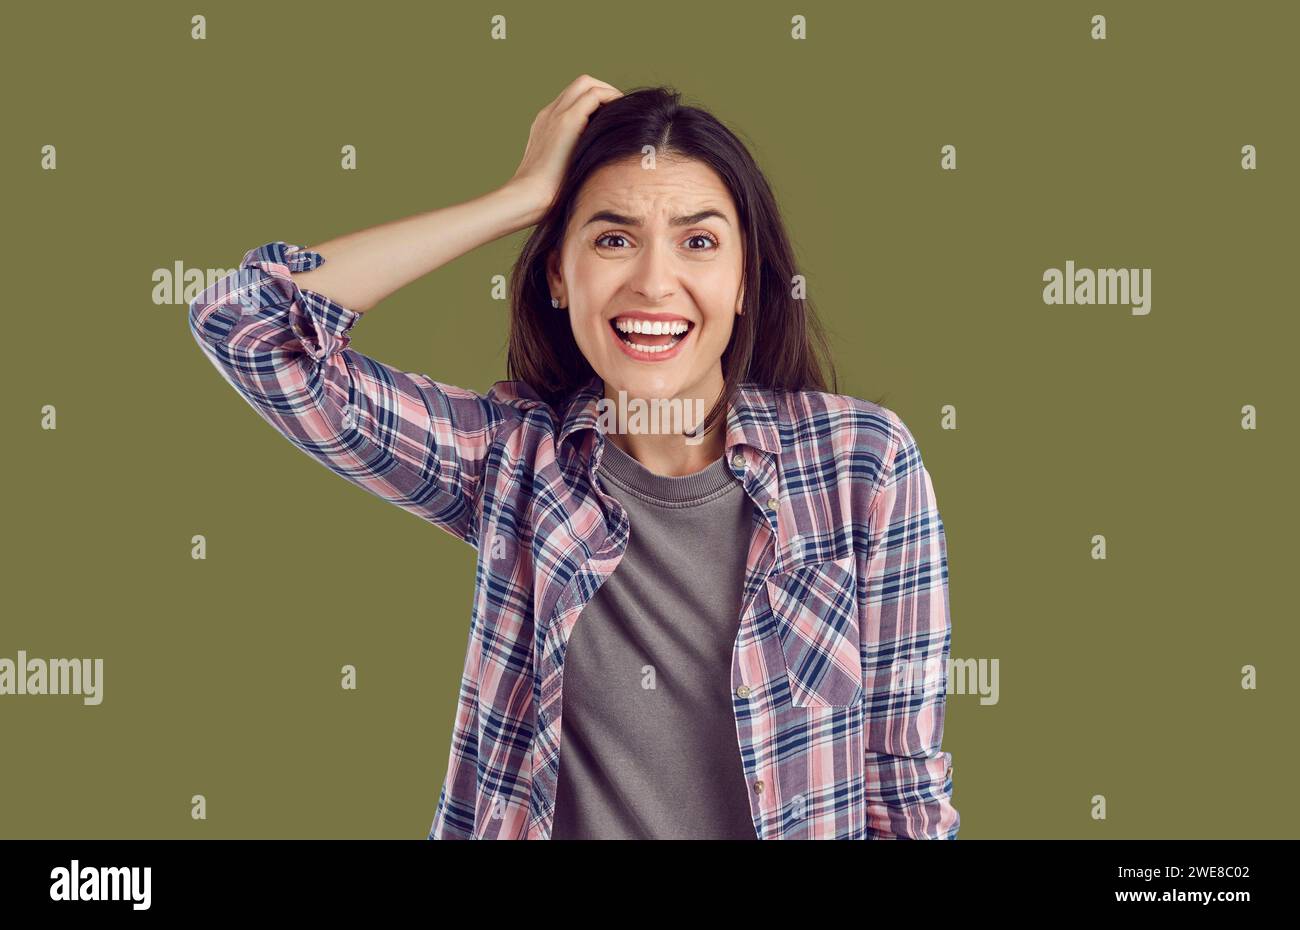 Femme stressée et nerveuse tenant la main sur la tête et regardant la caméra avec une expression inquiète Banque D'Images